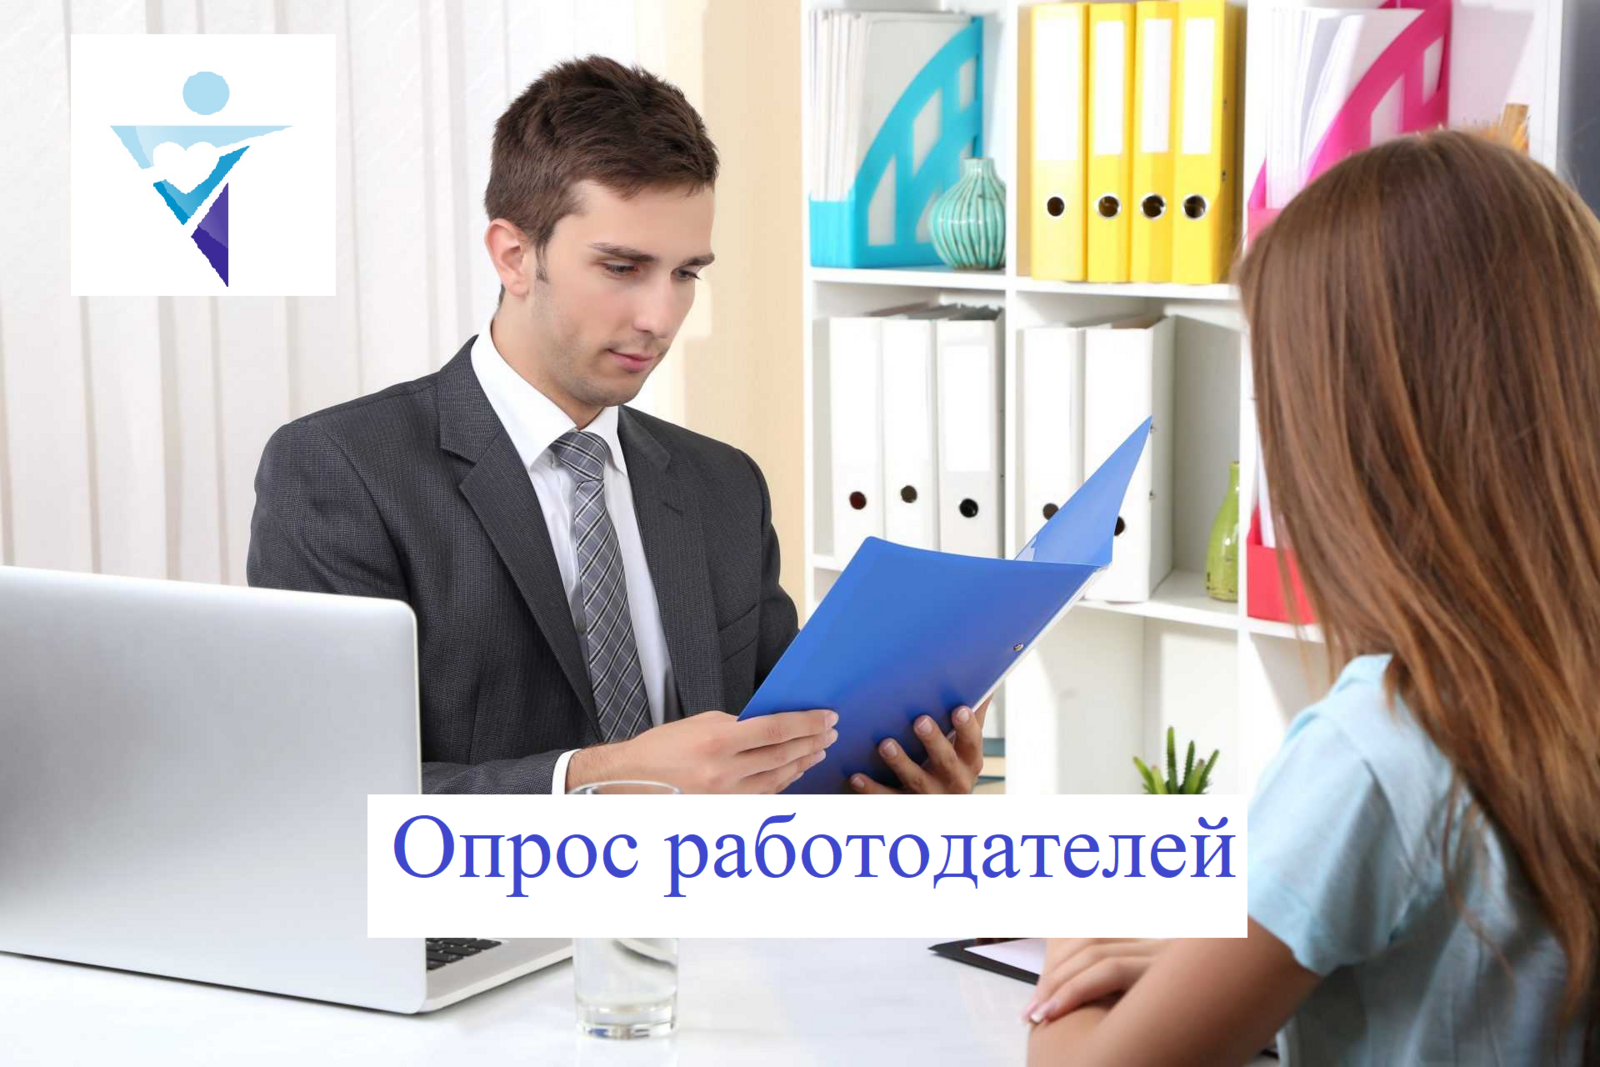 Министерство семьи и труда Башкортостана проводит опрос среди работодателей